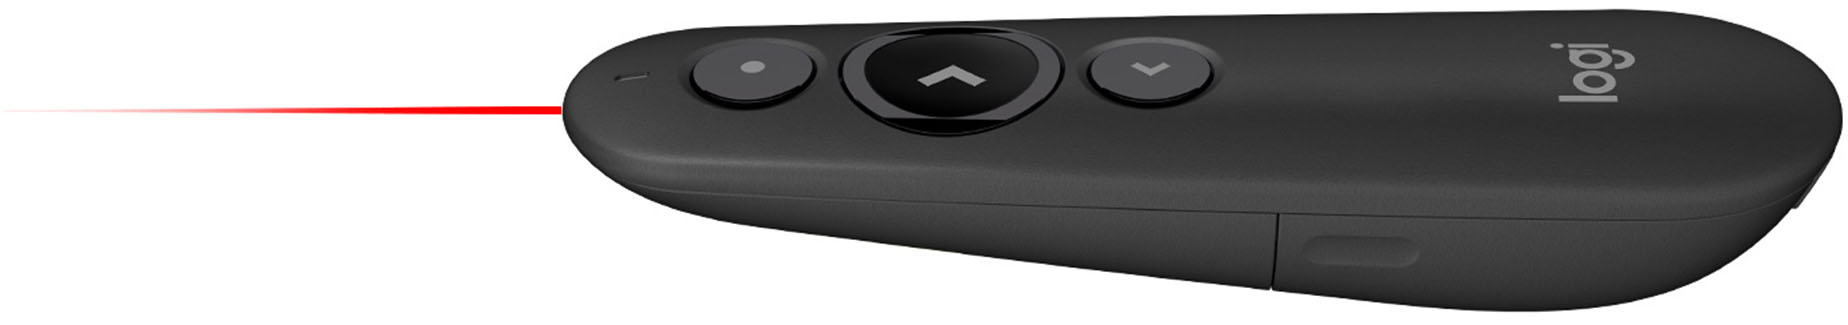 Blæse bevæge sig deltage Logitech R500s Presenter Bluetooth and USB Remote Control Graphite  910-006518 - Best Buy